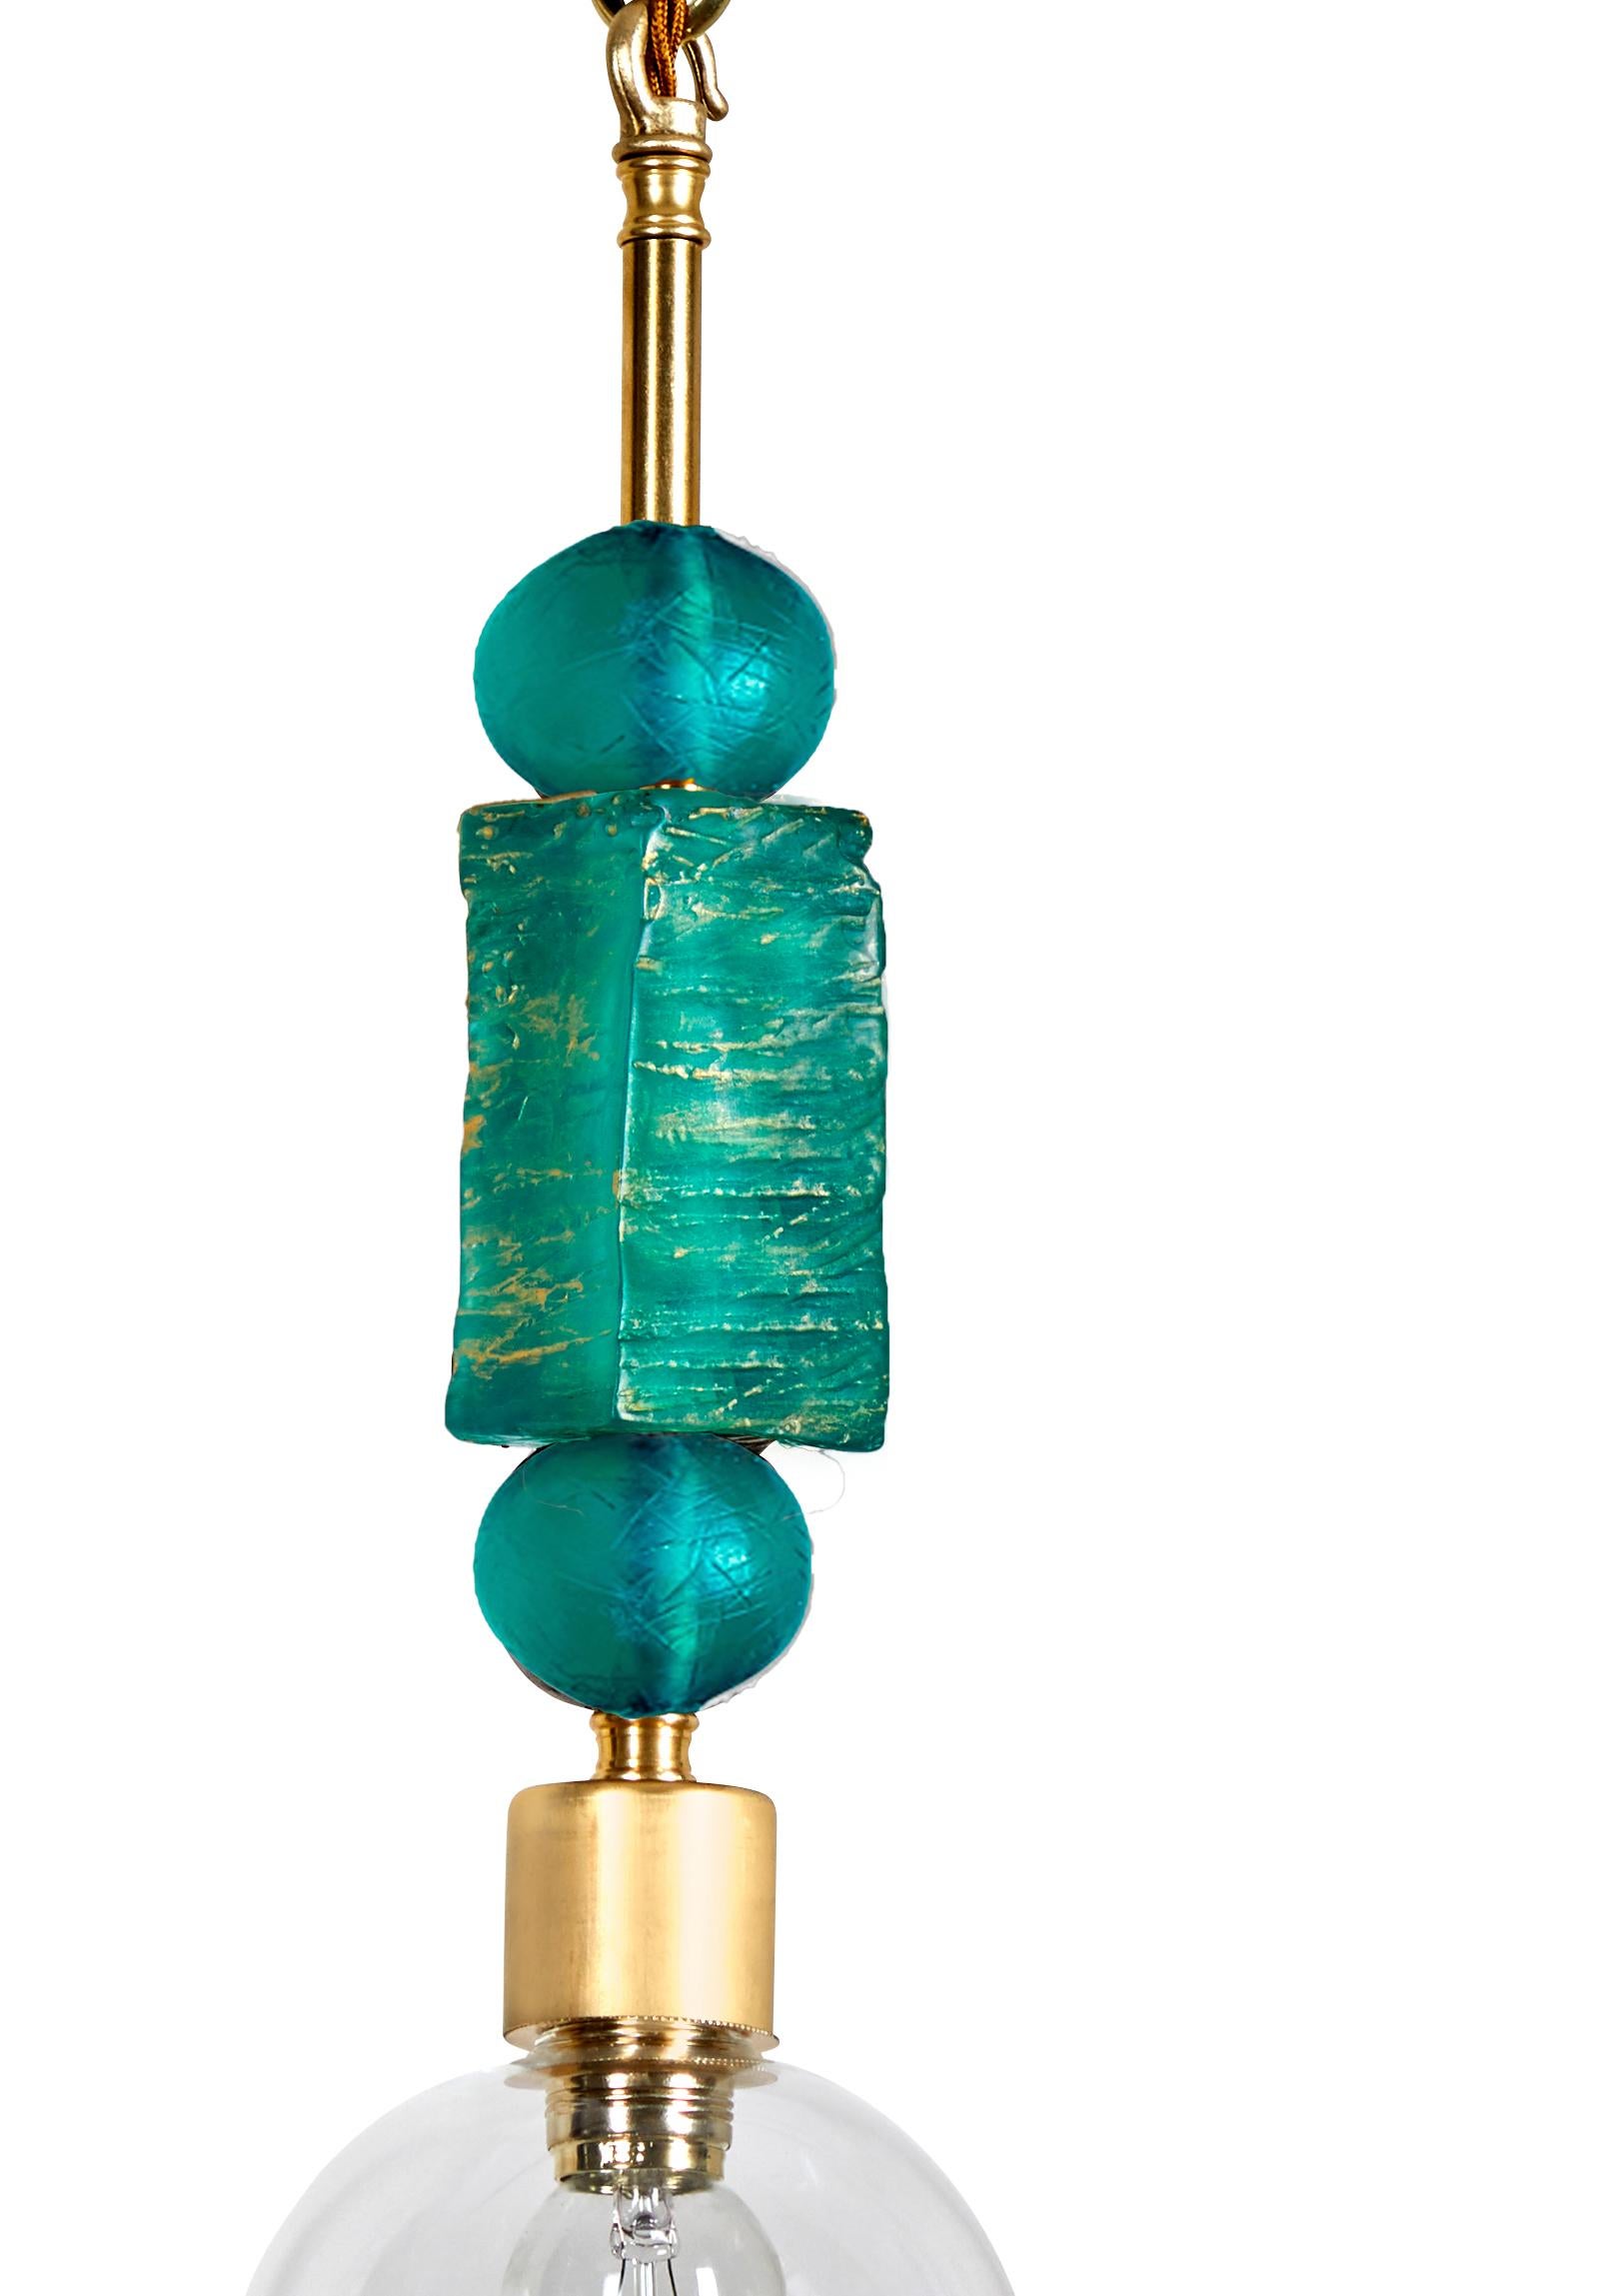 Cette suspension (plafonnier) de Margit Wittig comporte deux éléments en résine époxy en forme de perles et de cubes, qui sont coulés et patinés à la main dans son Studio de Londres. Chaque composant est fini avec plusieurs couches de pigments et de